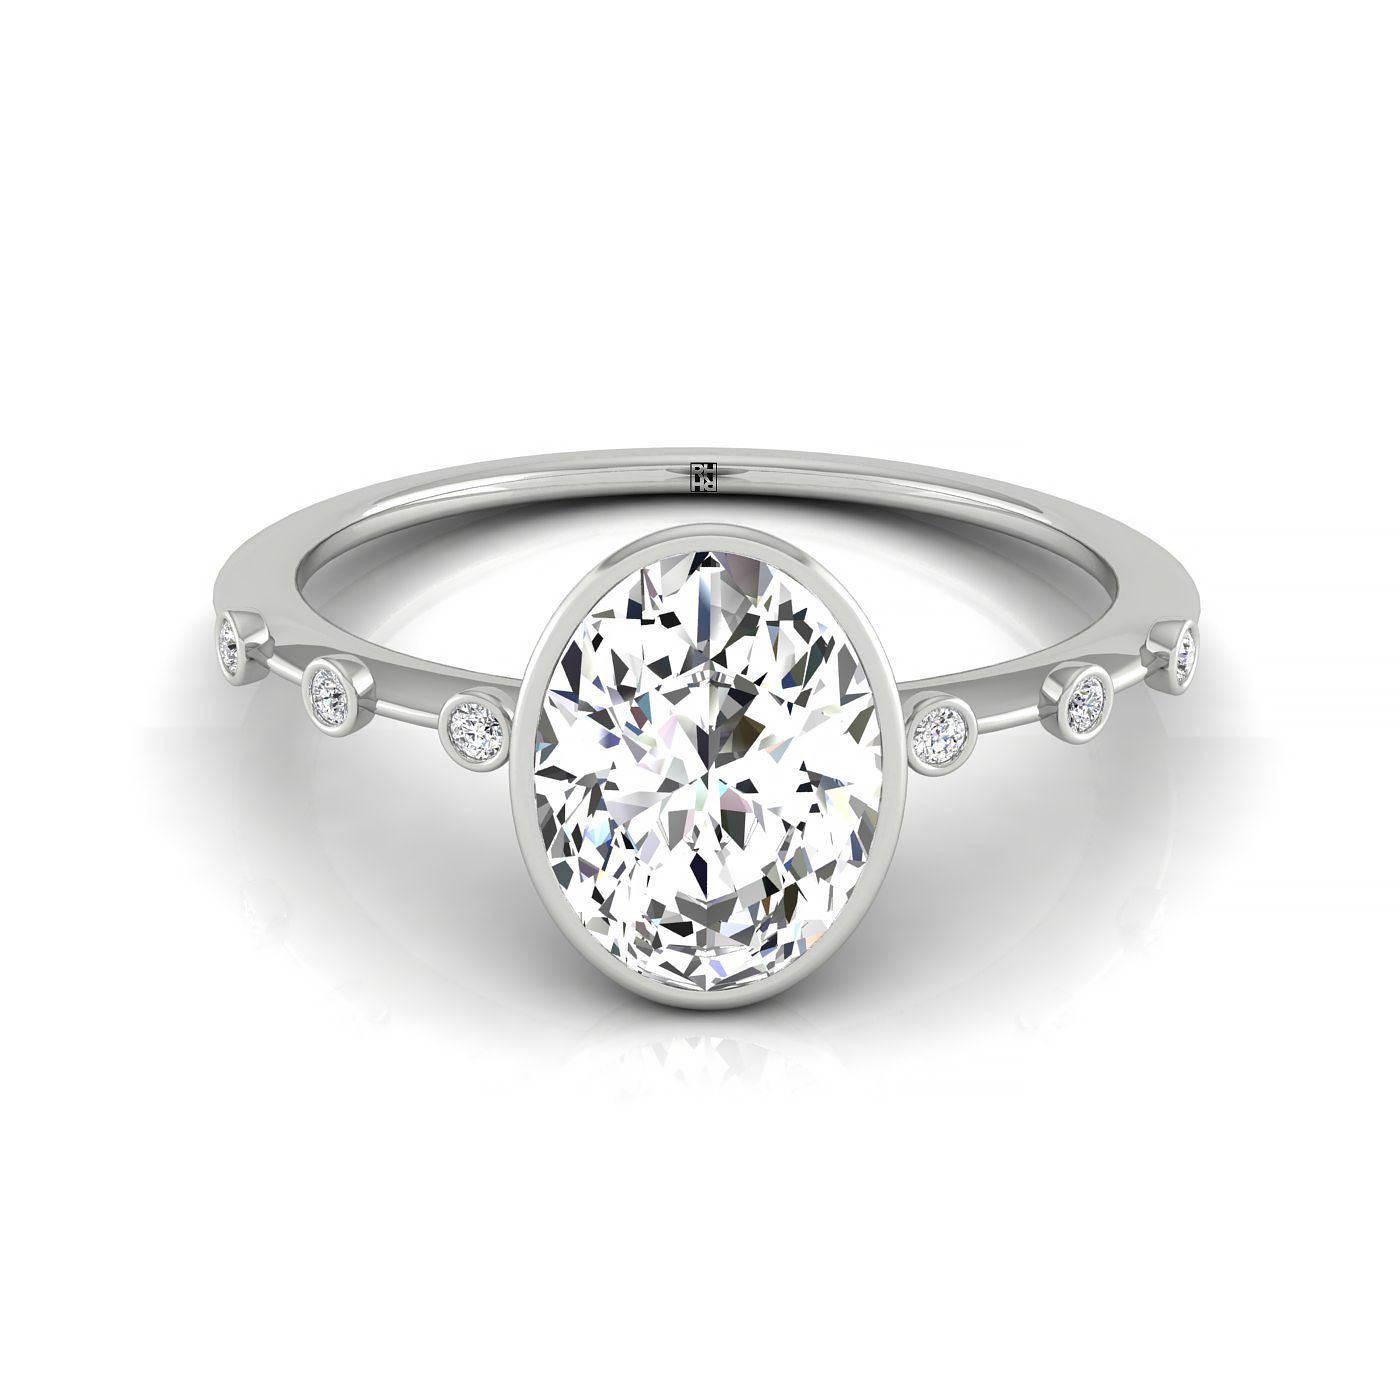 14kw Bezel Set Oval Engagement Ring With 6 Bezel Set Round Diamonds On Shank